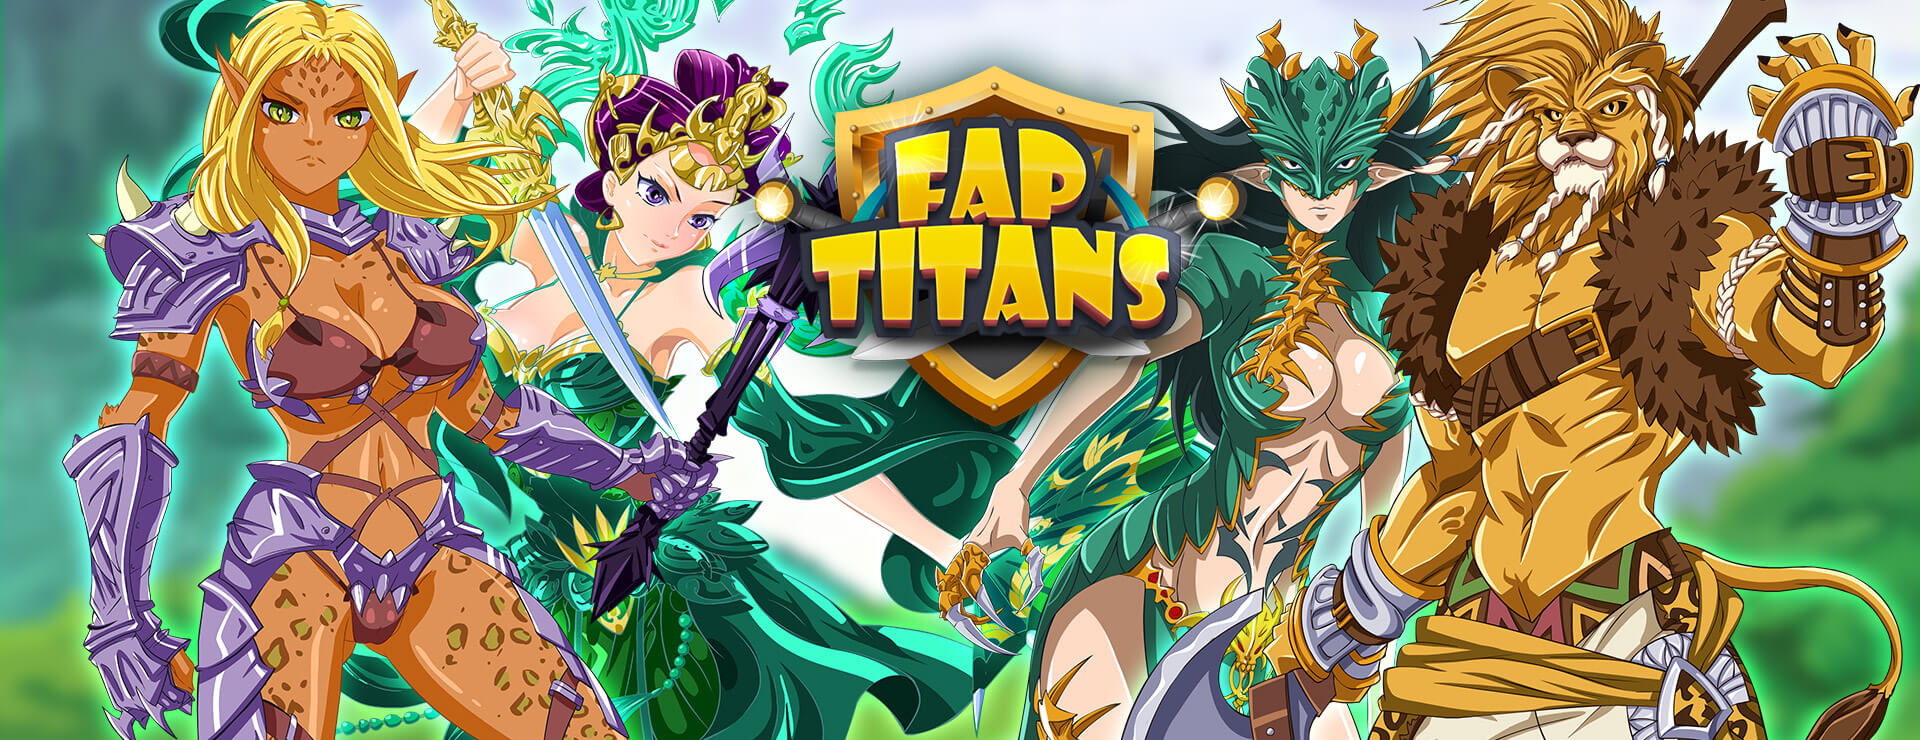 Fap Titans Game - Zwanglos  Spiel